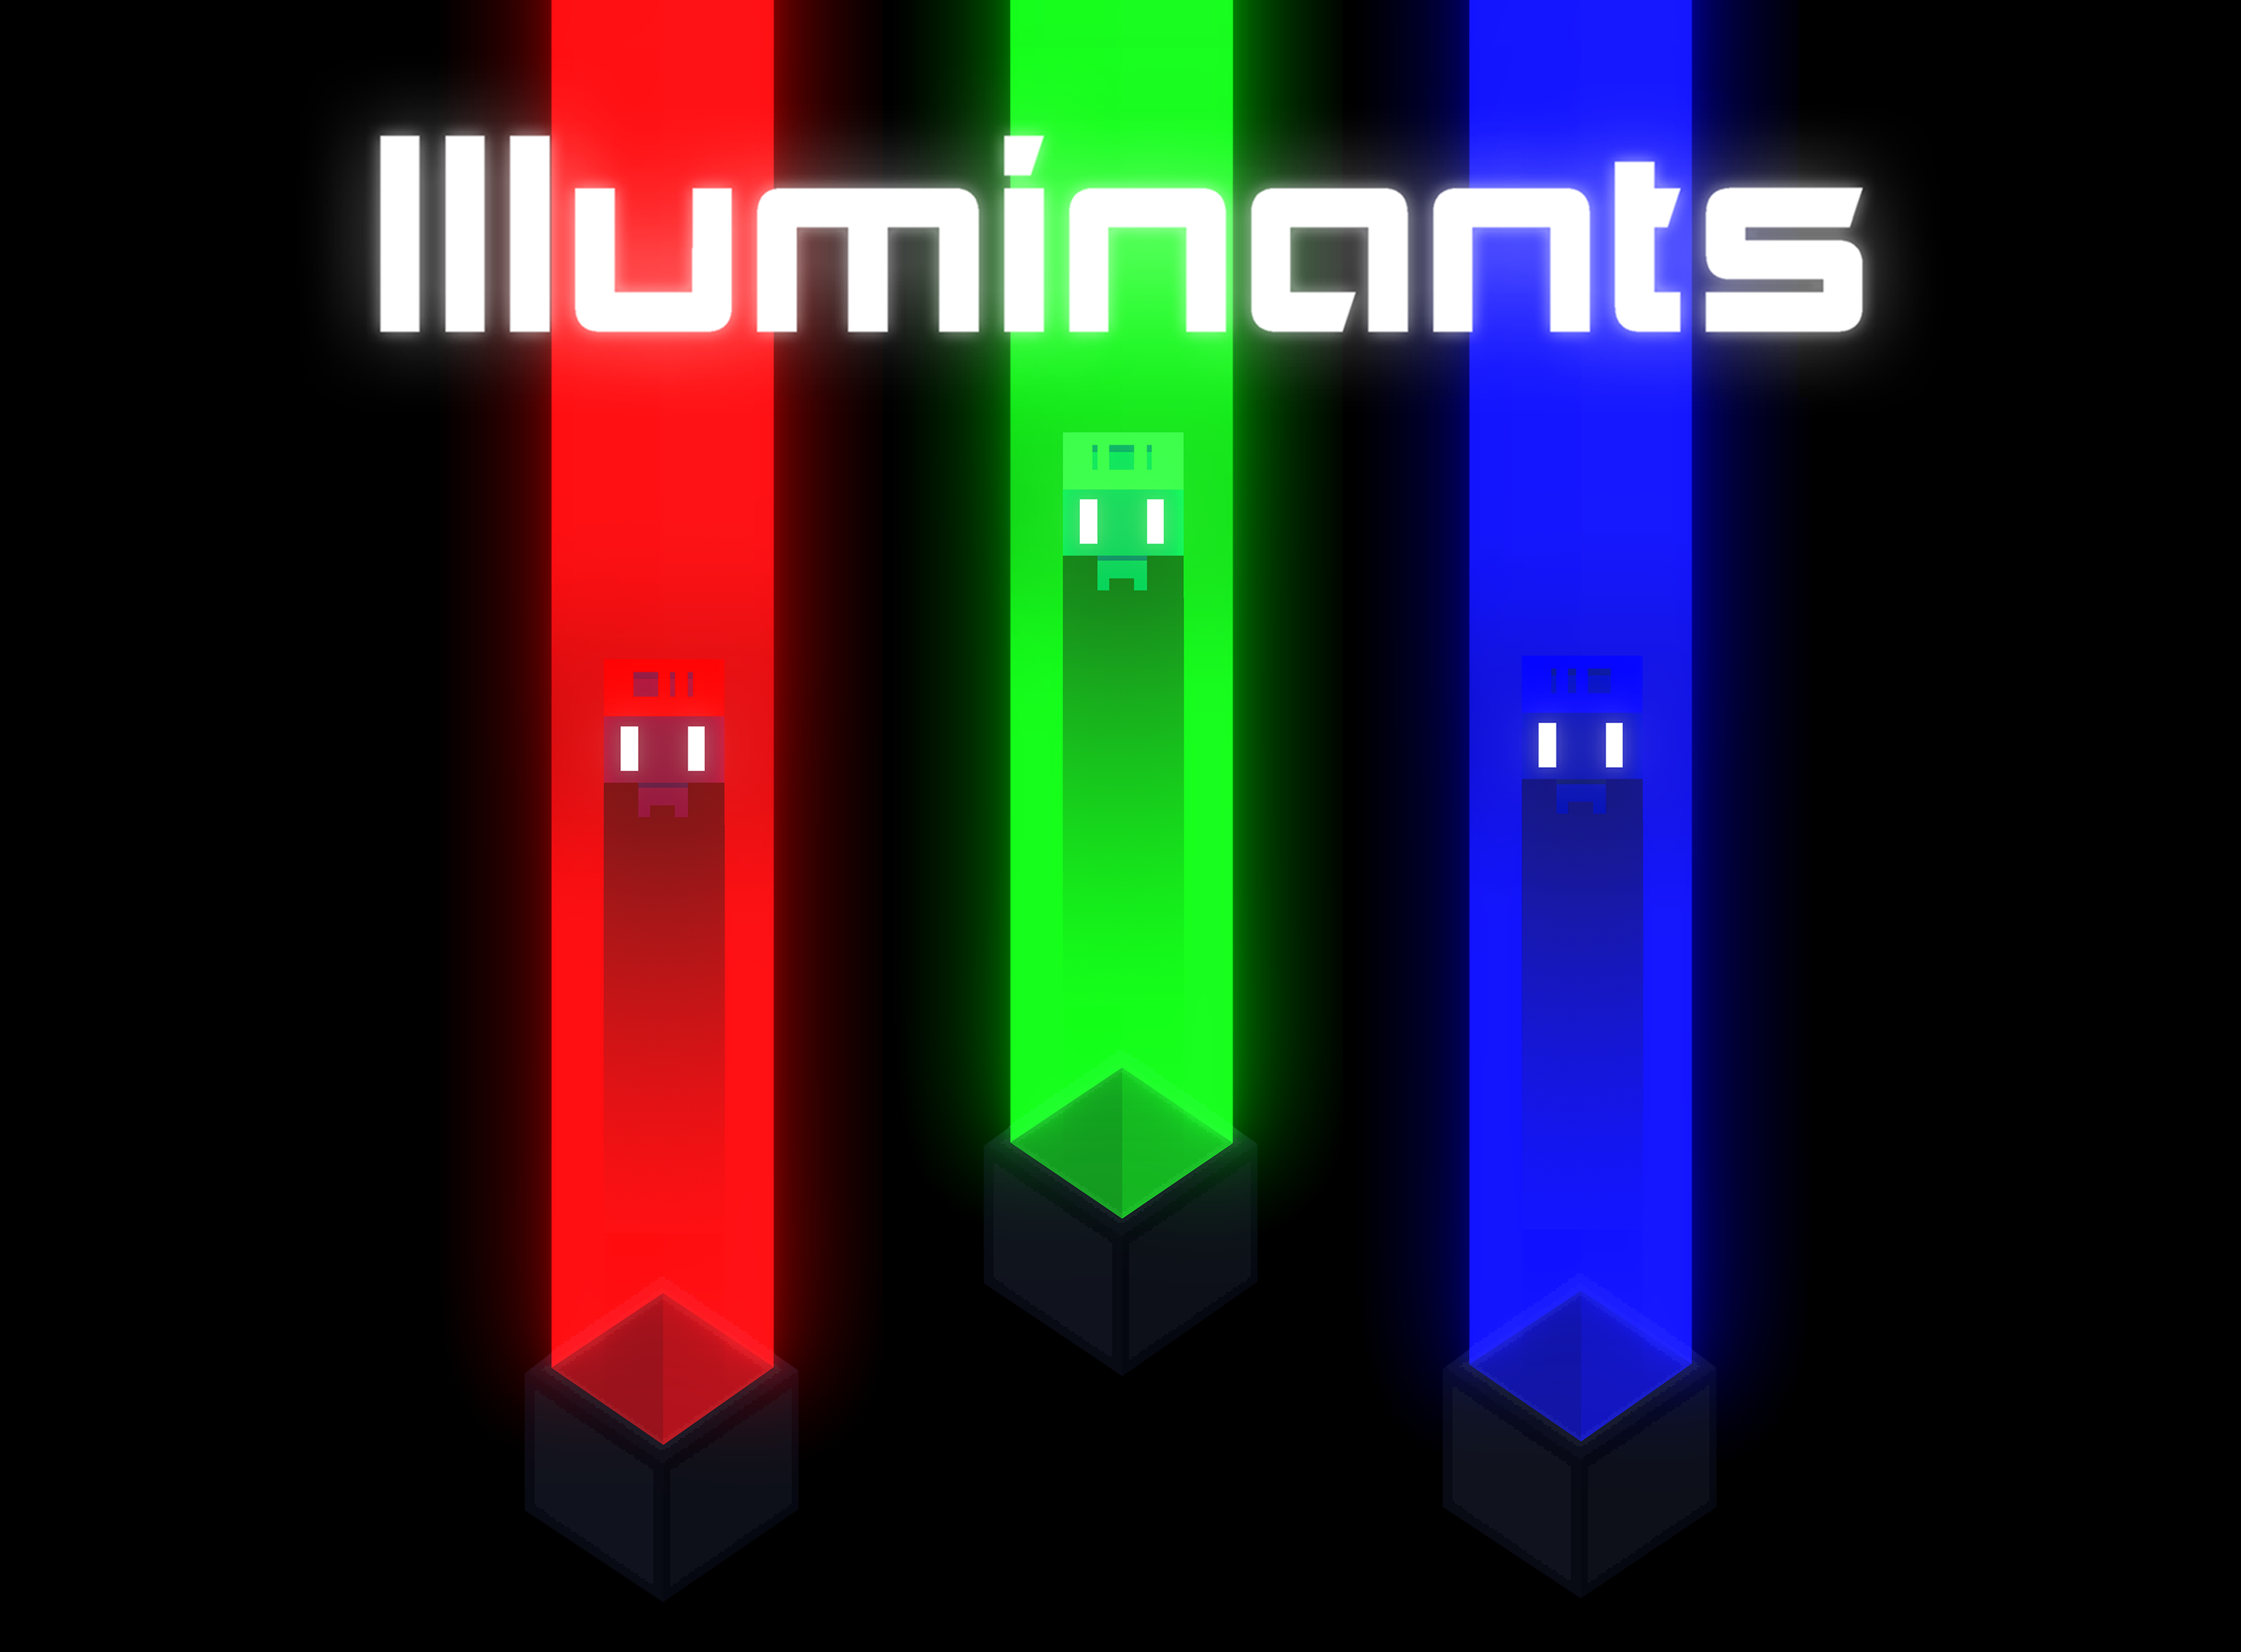 Illuminants